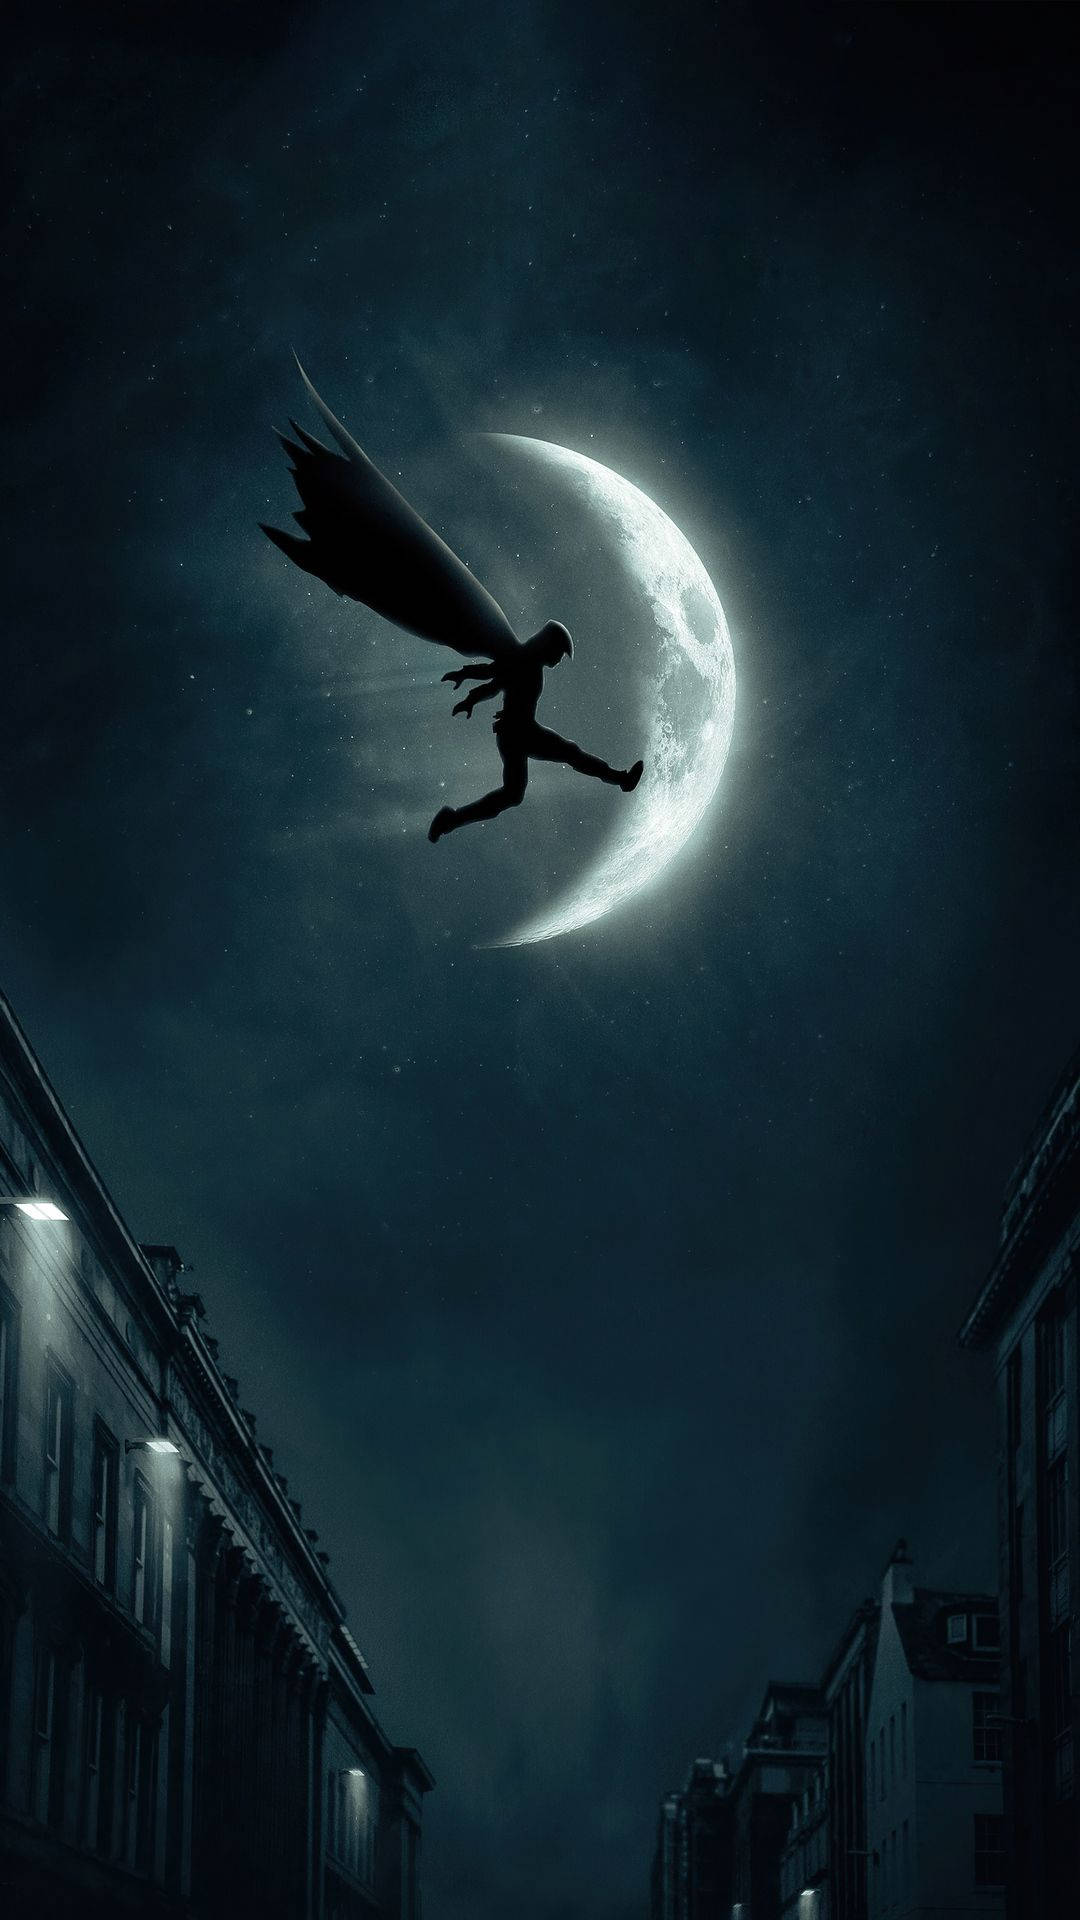 Saltandoa Través De La Oscuridad - Teléfono De Caballero Luna Fondo de pantalla